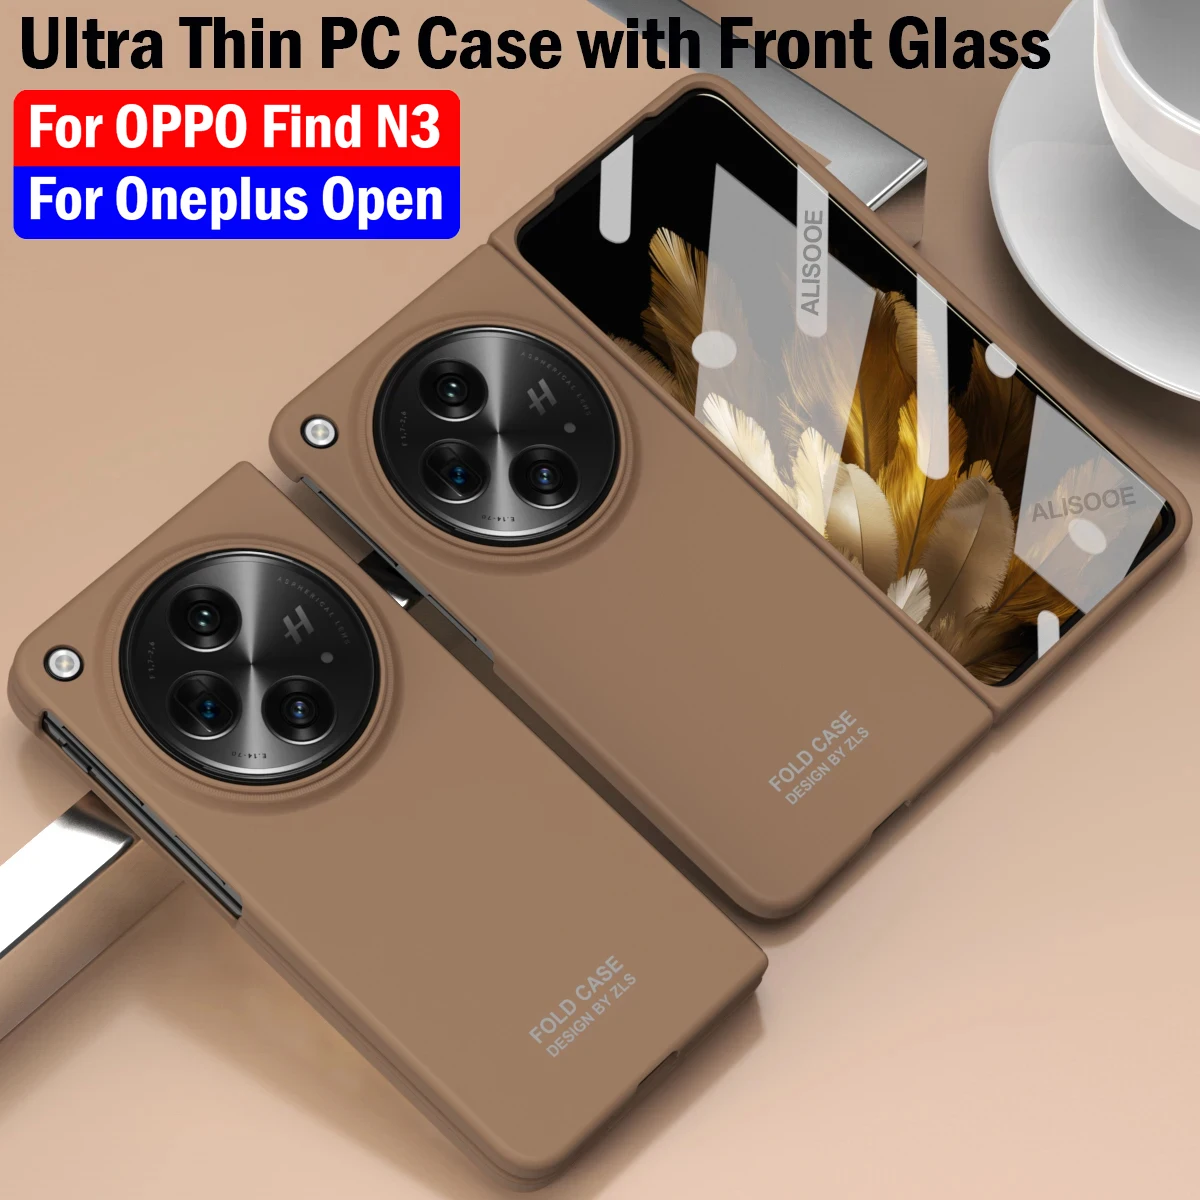 

Защитный чехол для Oneplus Open Case, Ультратонкий пластиковый жесткий защитный чехол из поликарбоната для OPPO Find N3 5G Capa со стеклом для переднего экрана